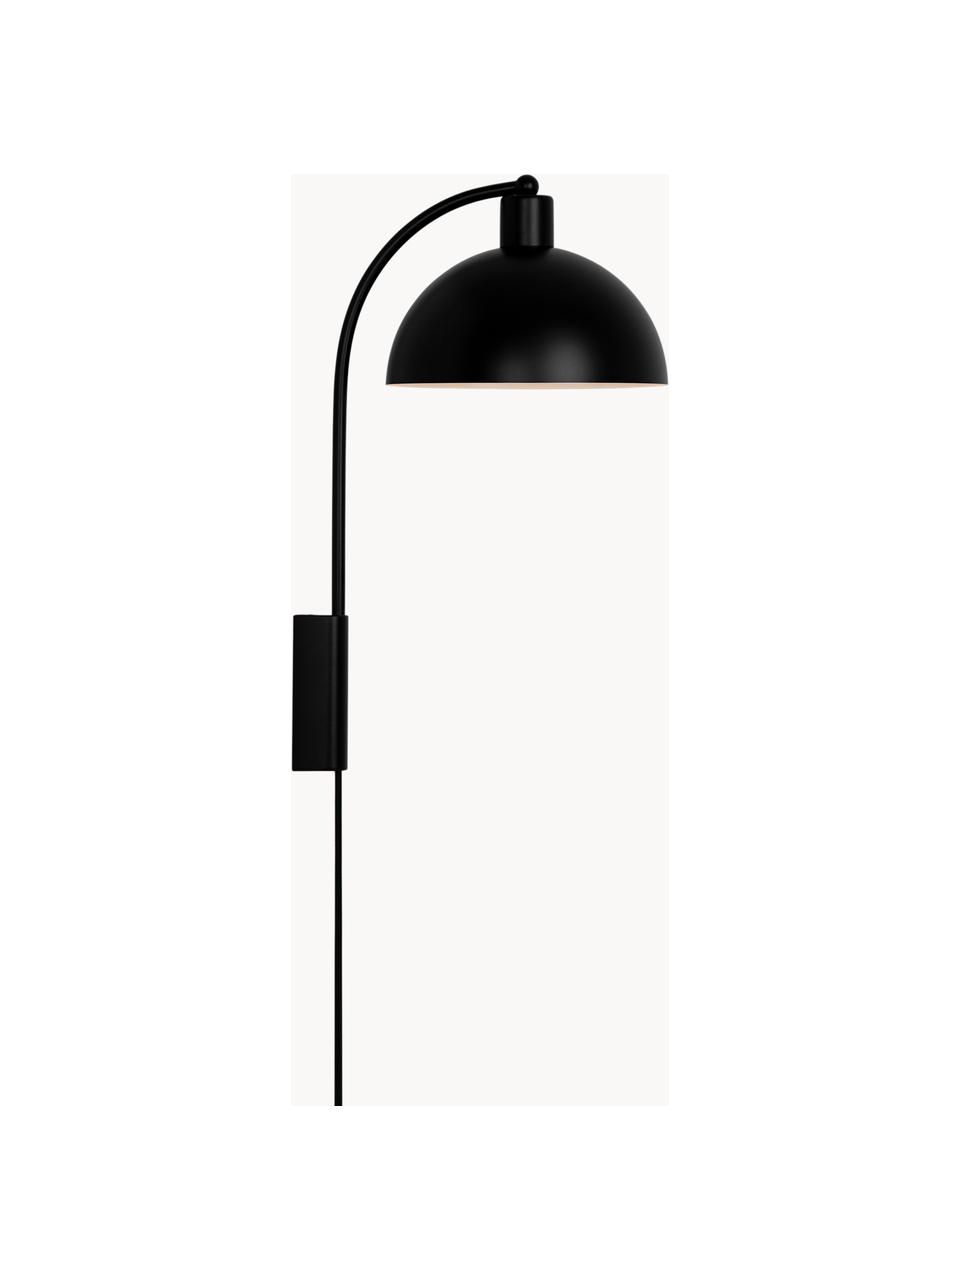 Grosse Wandleuchte Ellen mit Stecker, Lampenschirm: Kunststoff, Schwarz, matt, T 26 x H 43 cm